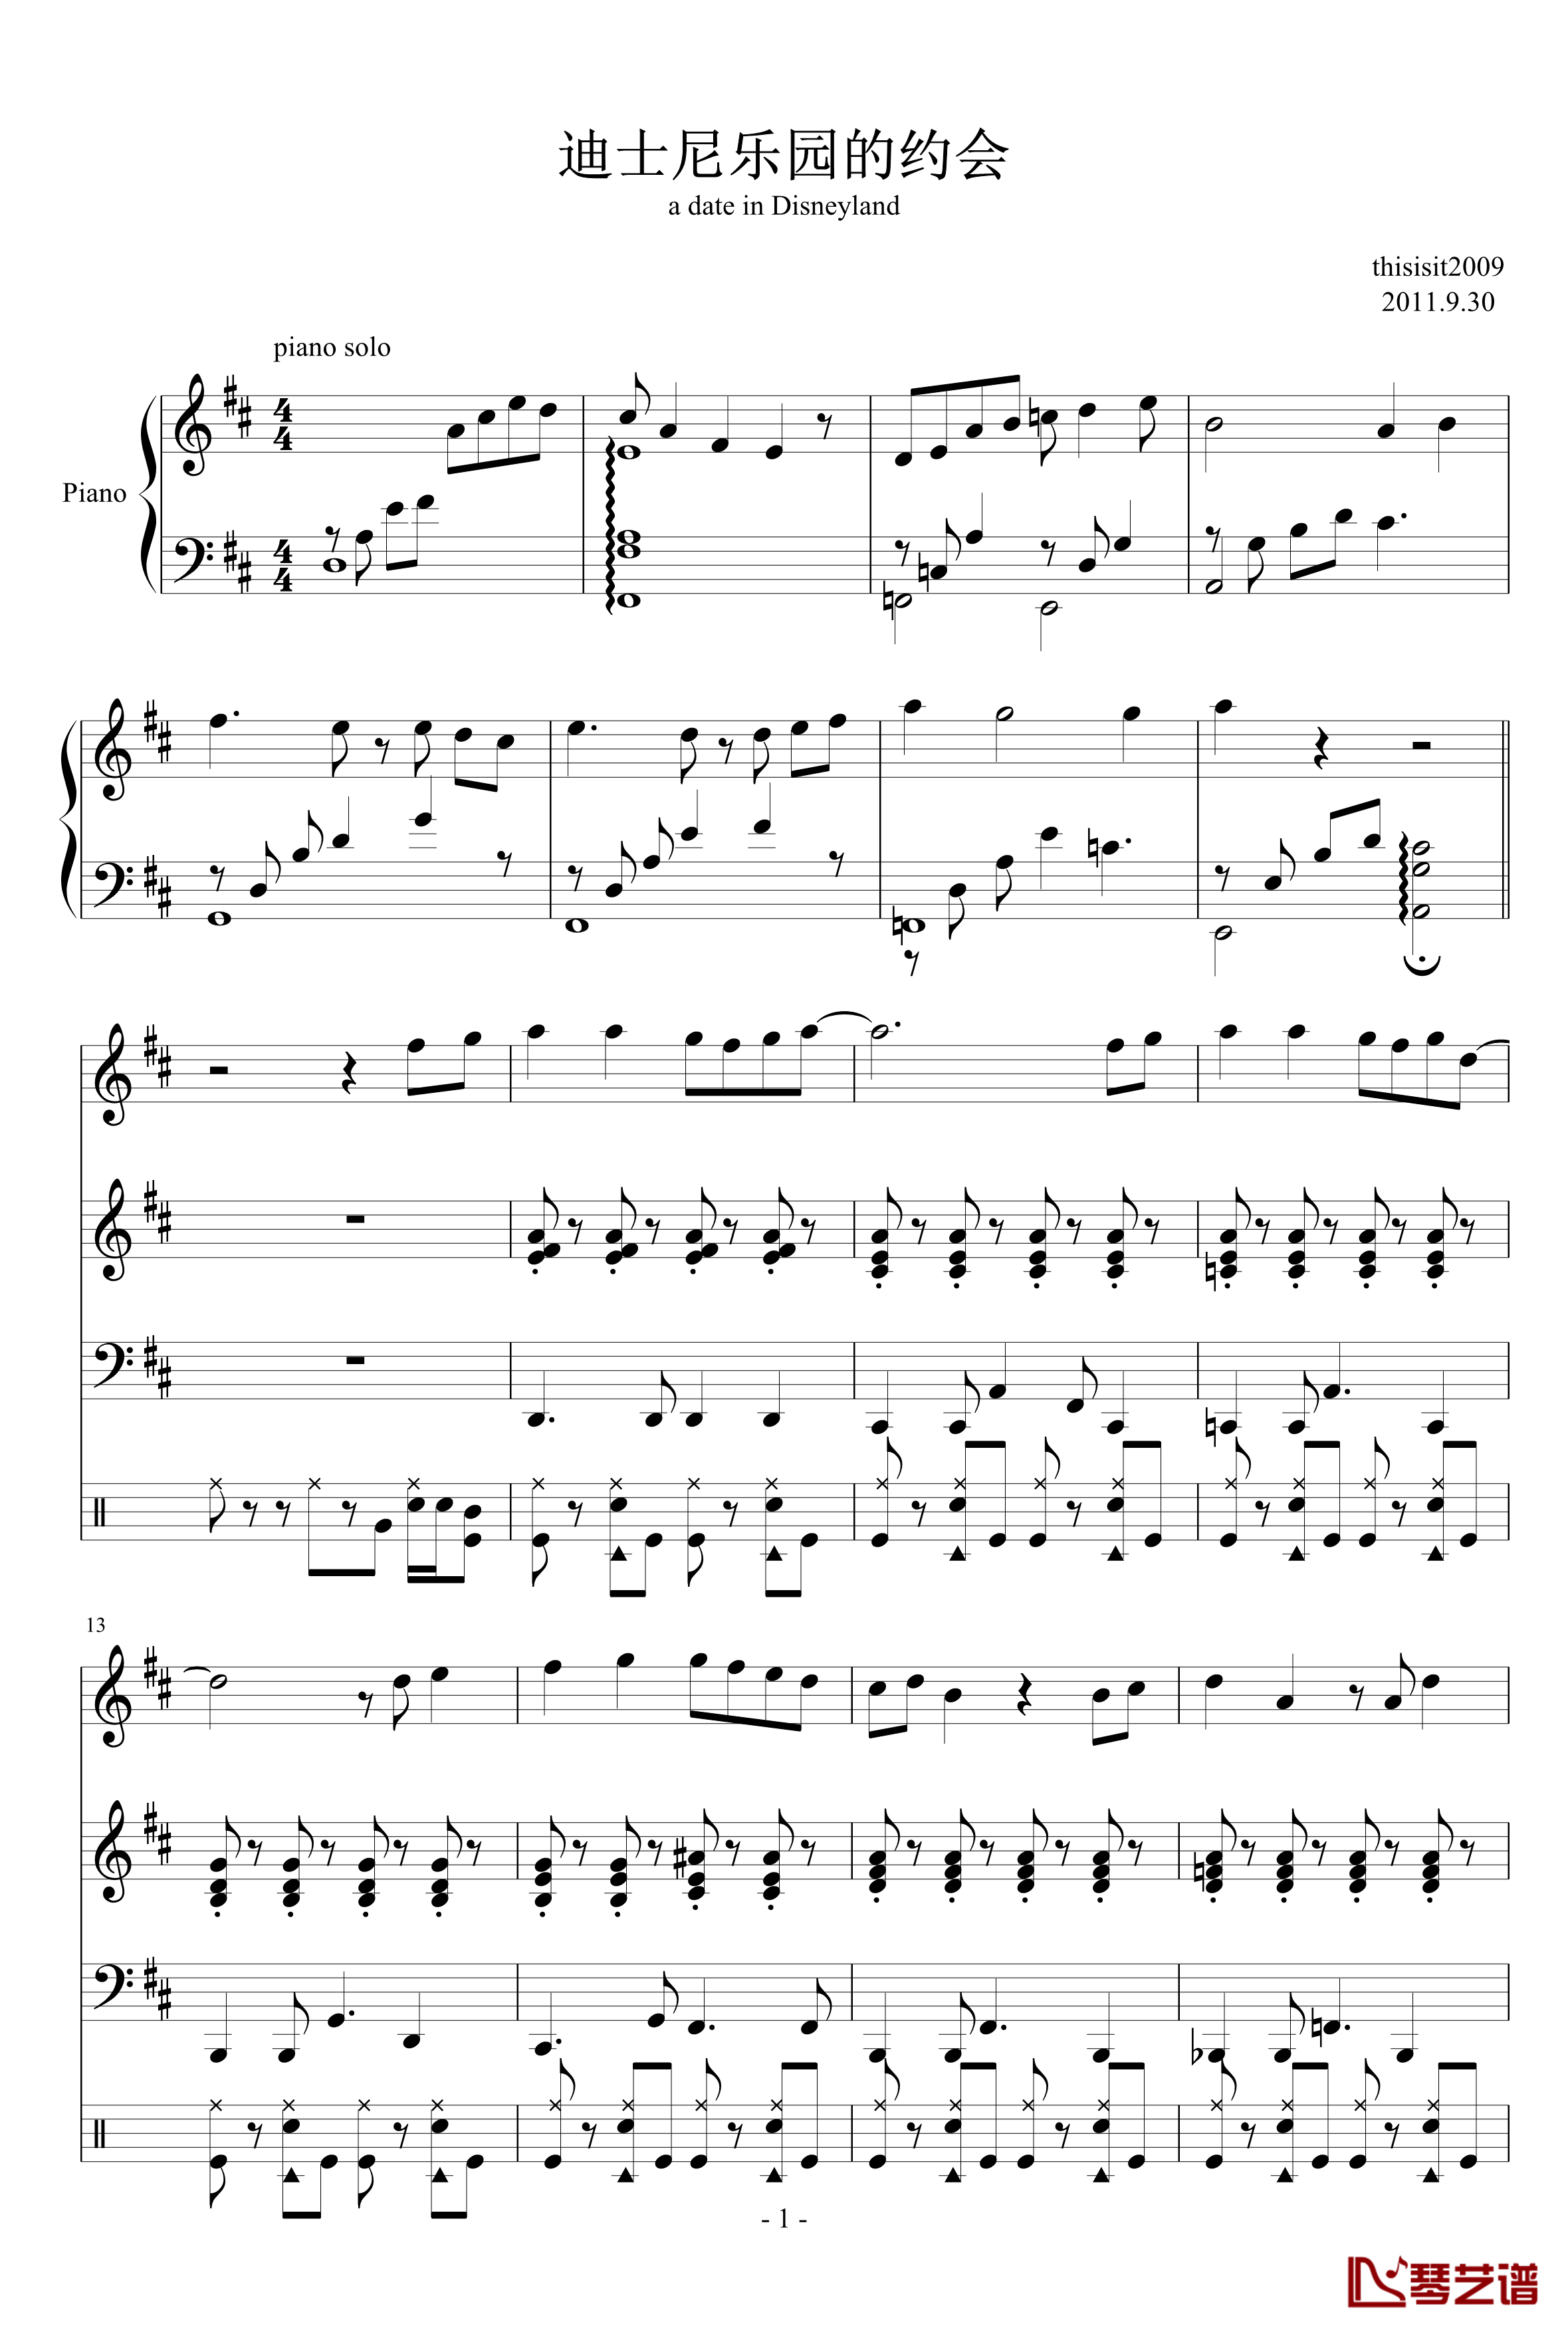 迪士尼乐园的约会钢琴谱-thisisit20091